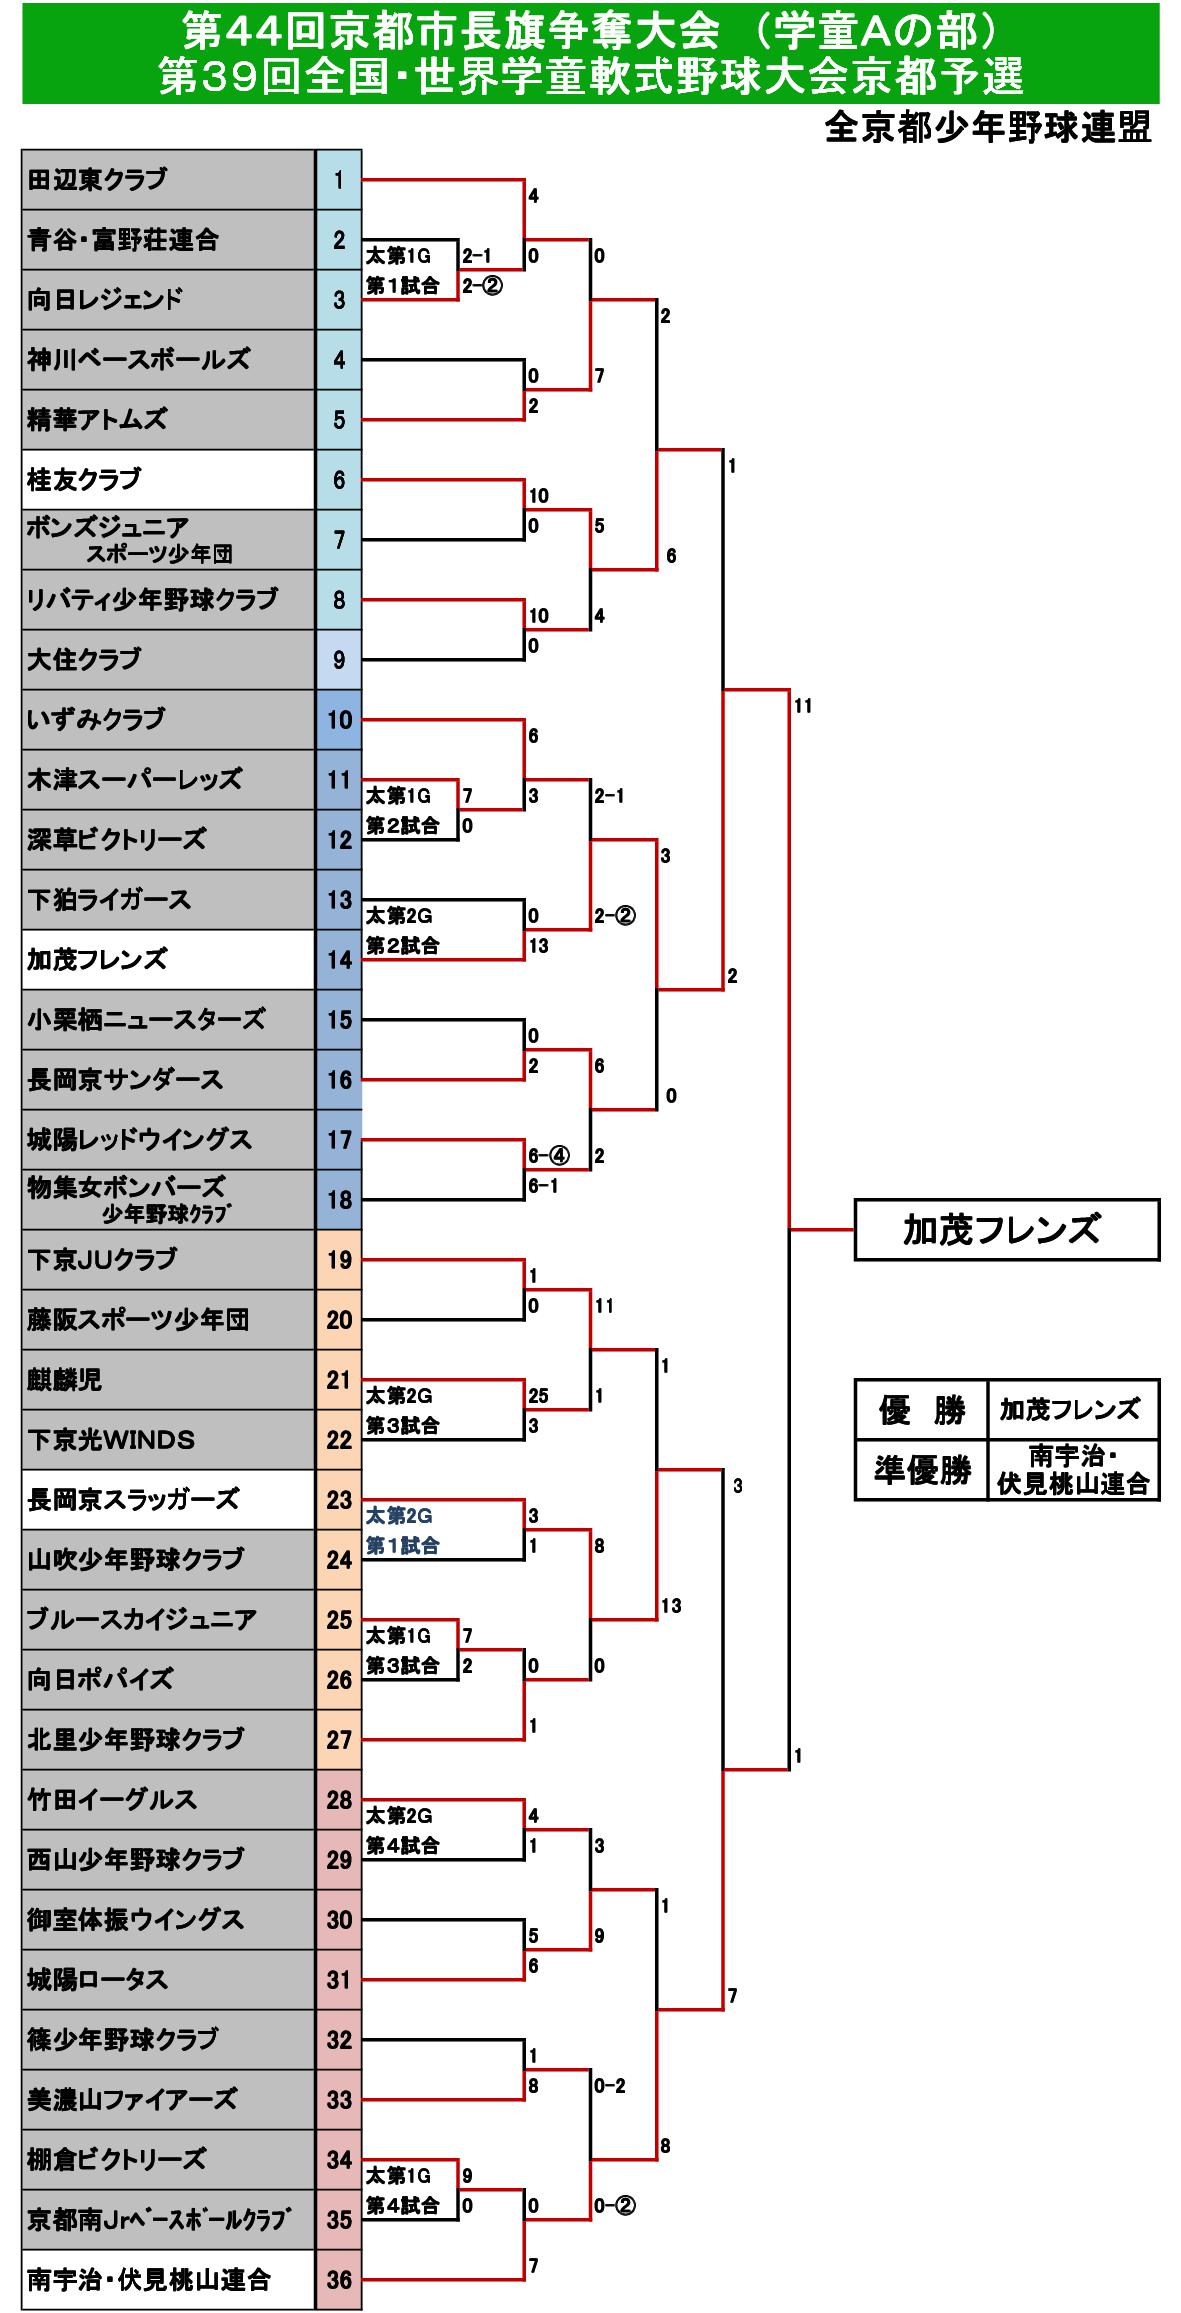 44回京都市長旗トーナメント表 (2021.3.7～).jpg